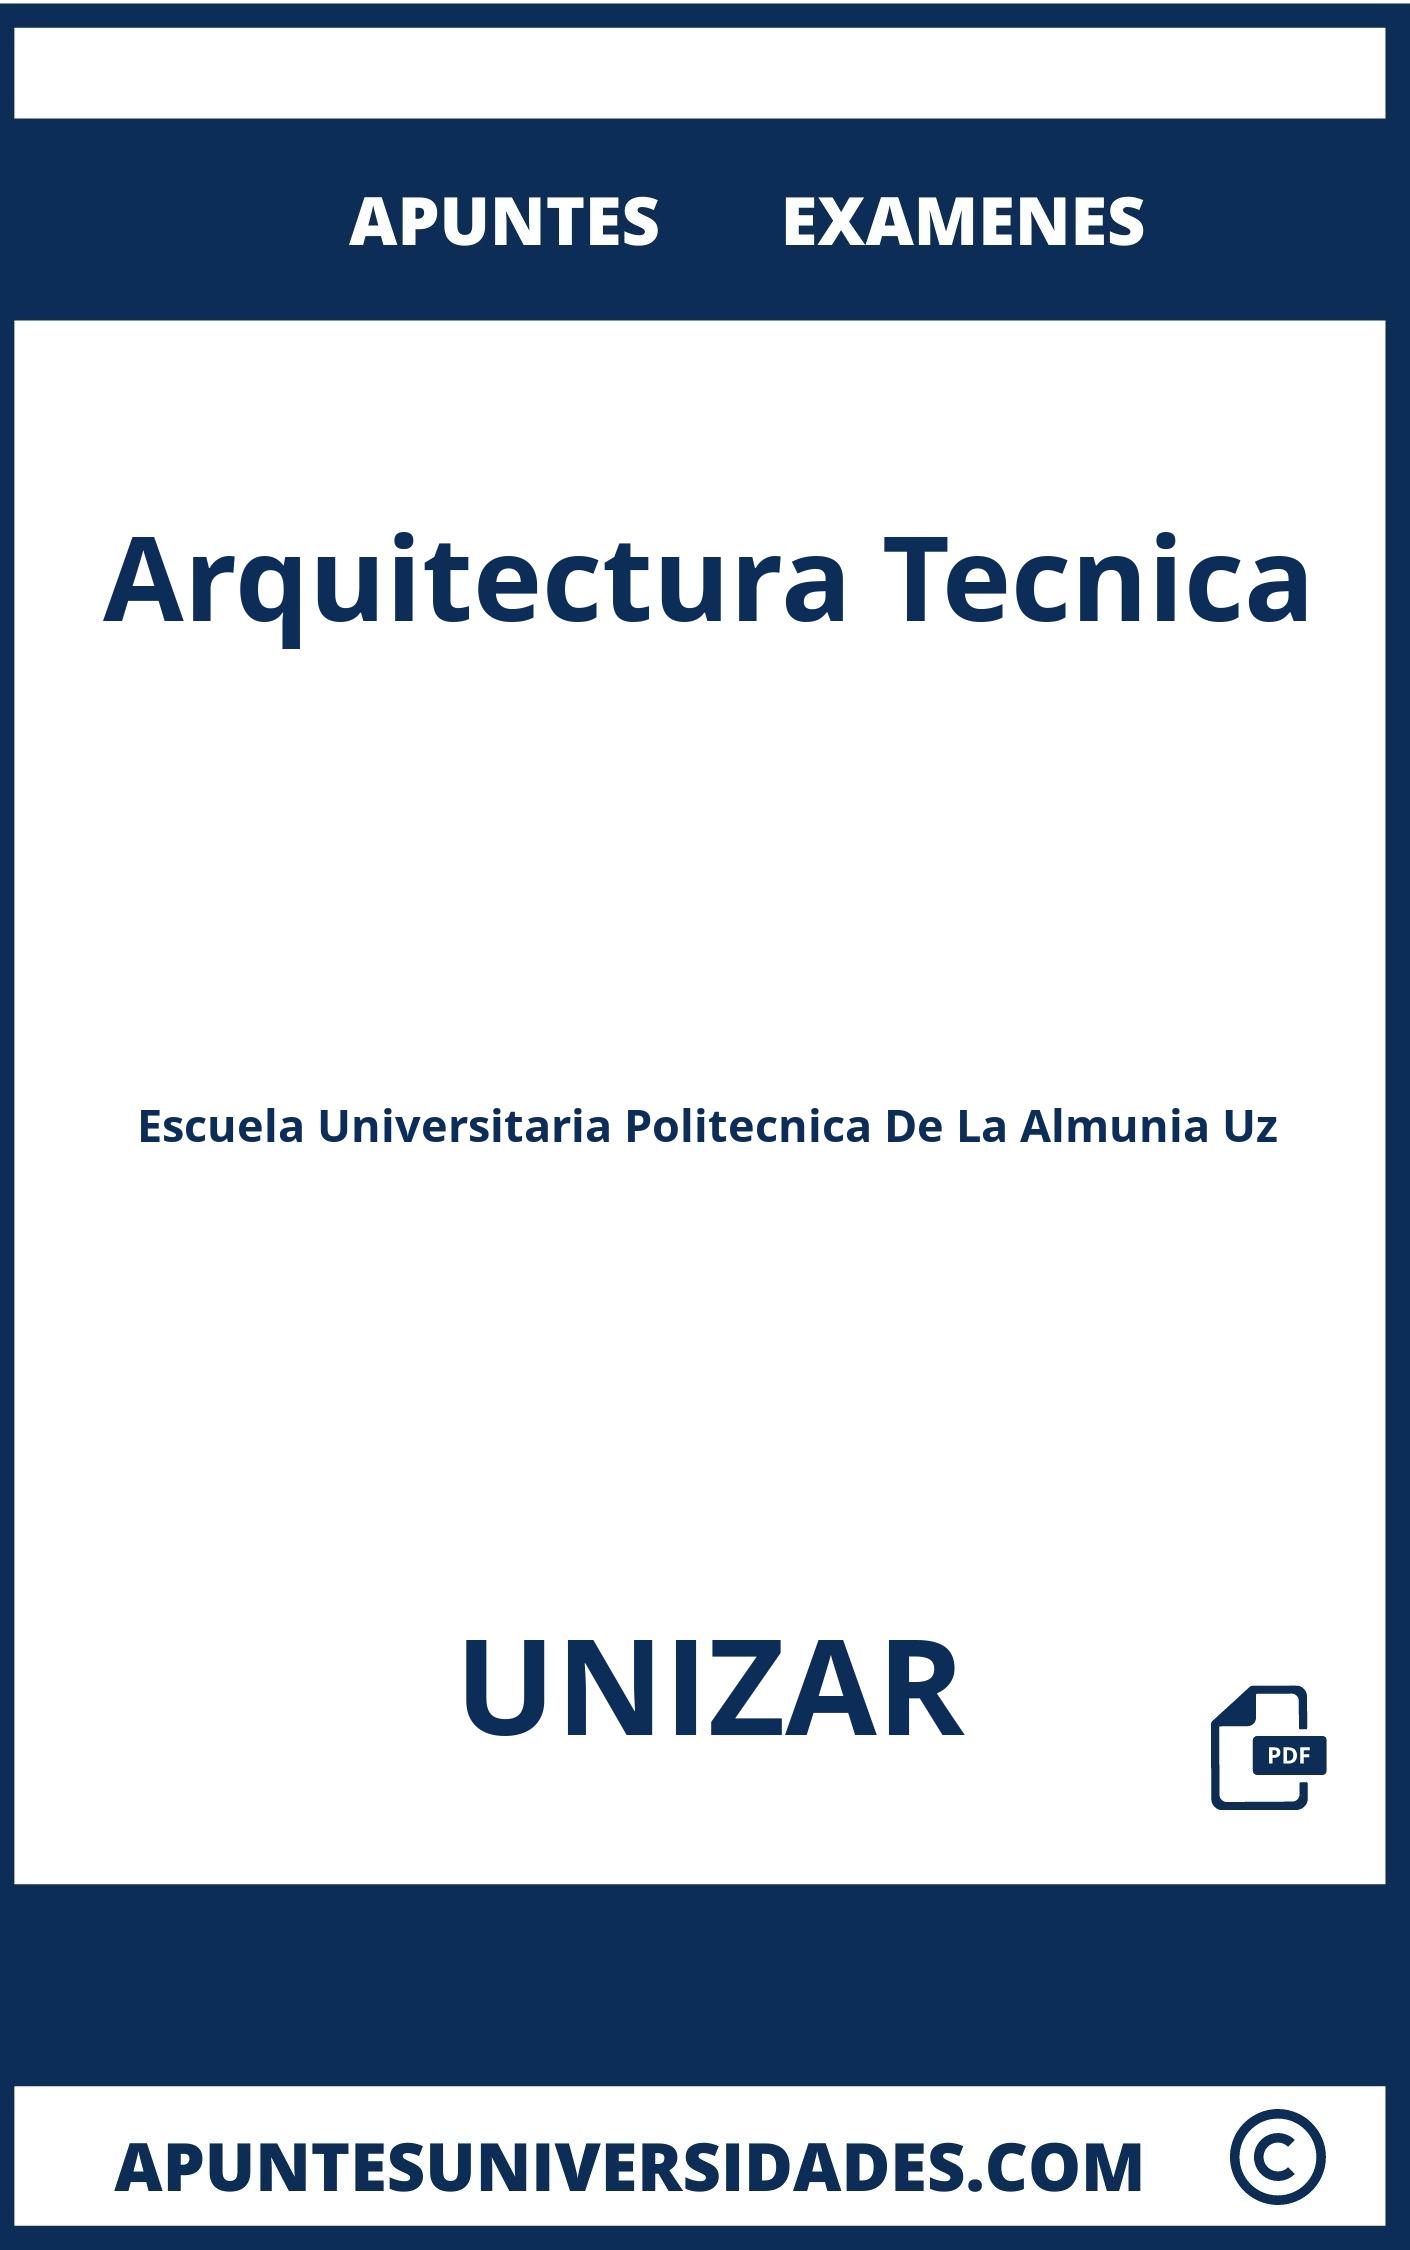 Examenes Apuntes Arquitectura Tecnica UNIZAR